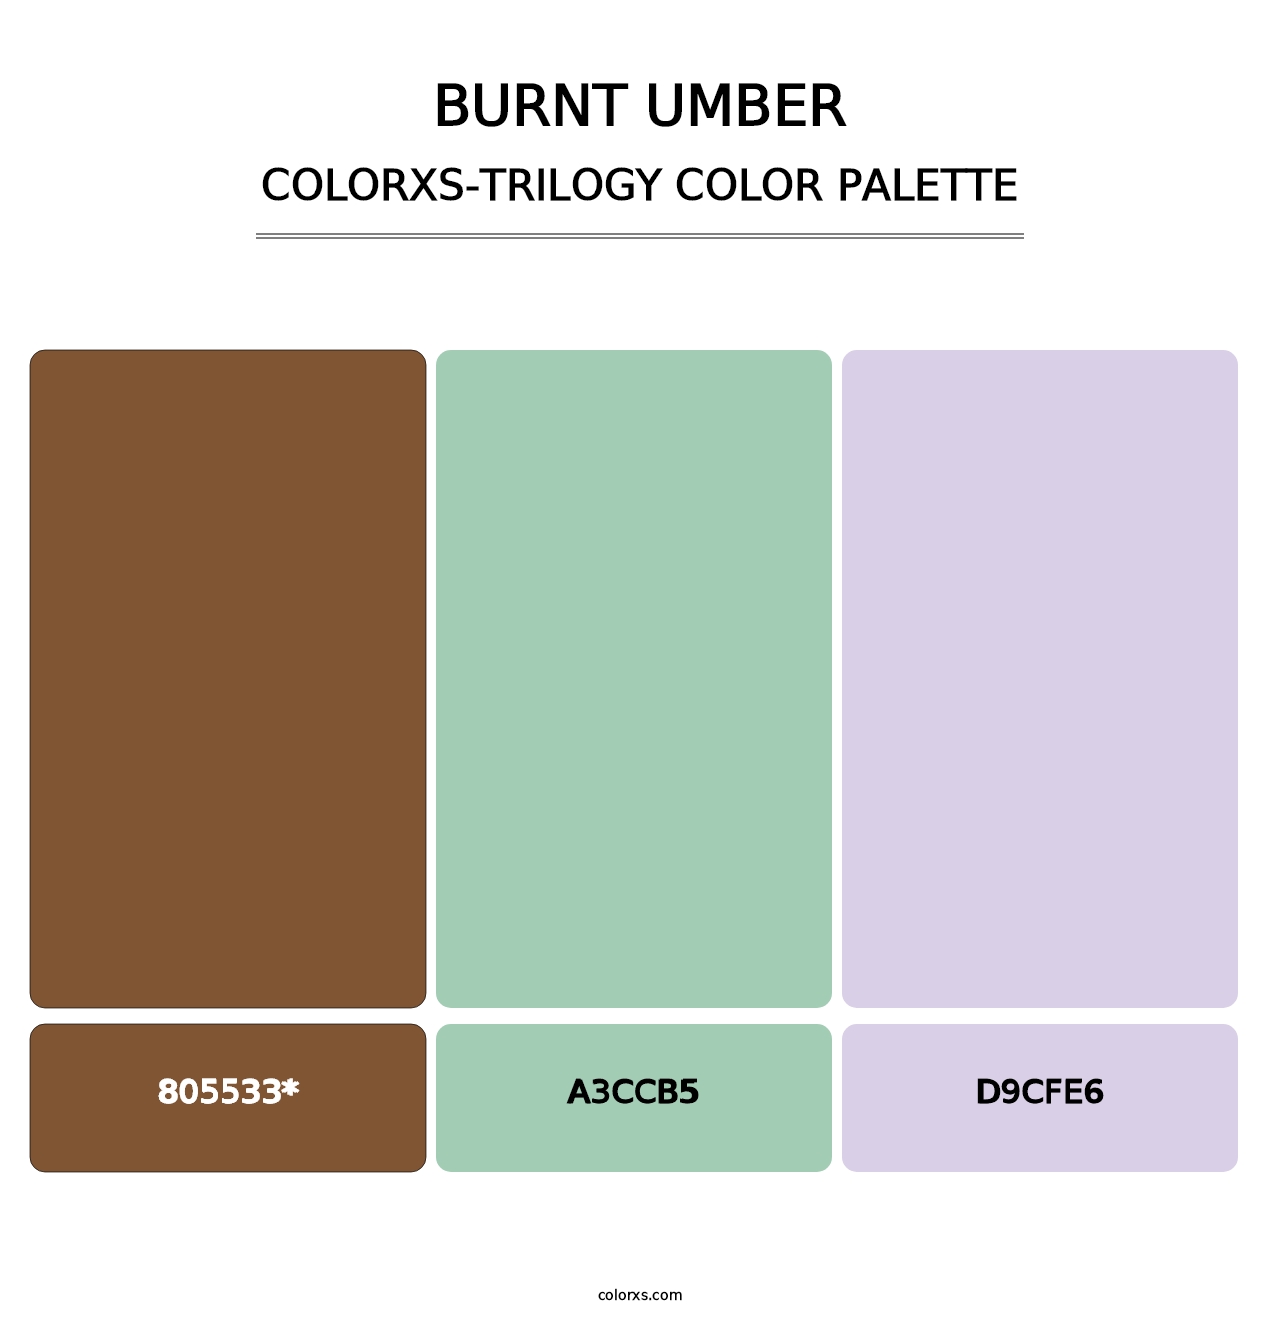 Burnt Umber - Colorxs Trilogy Palette